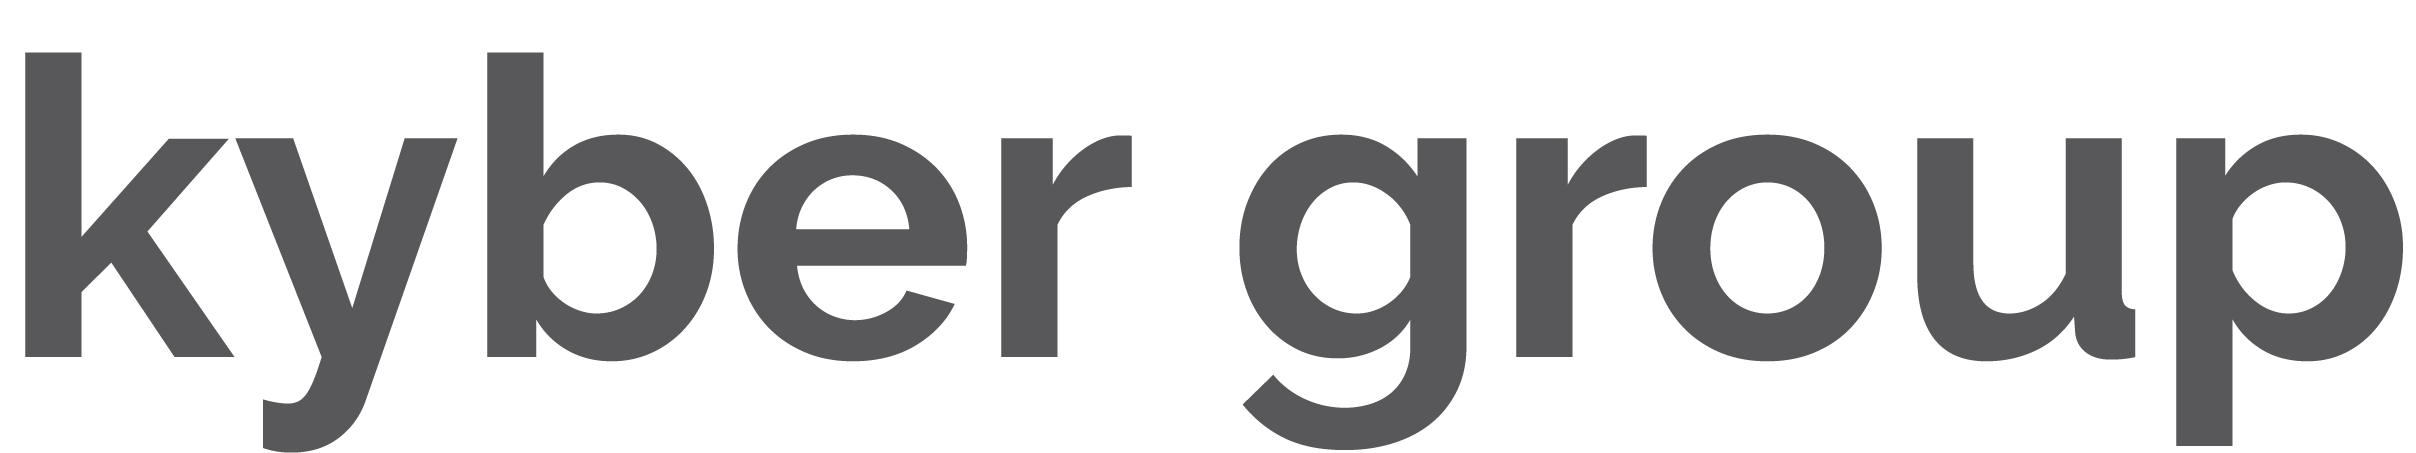 Kyber_logo